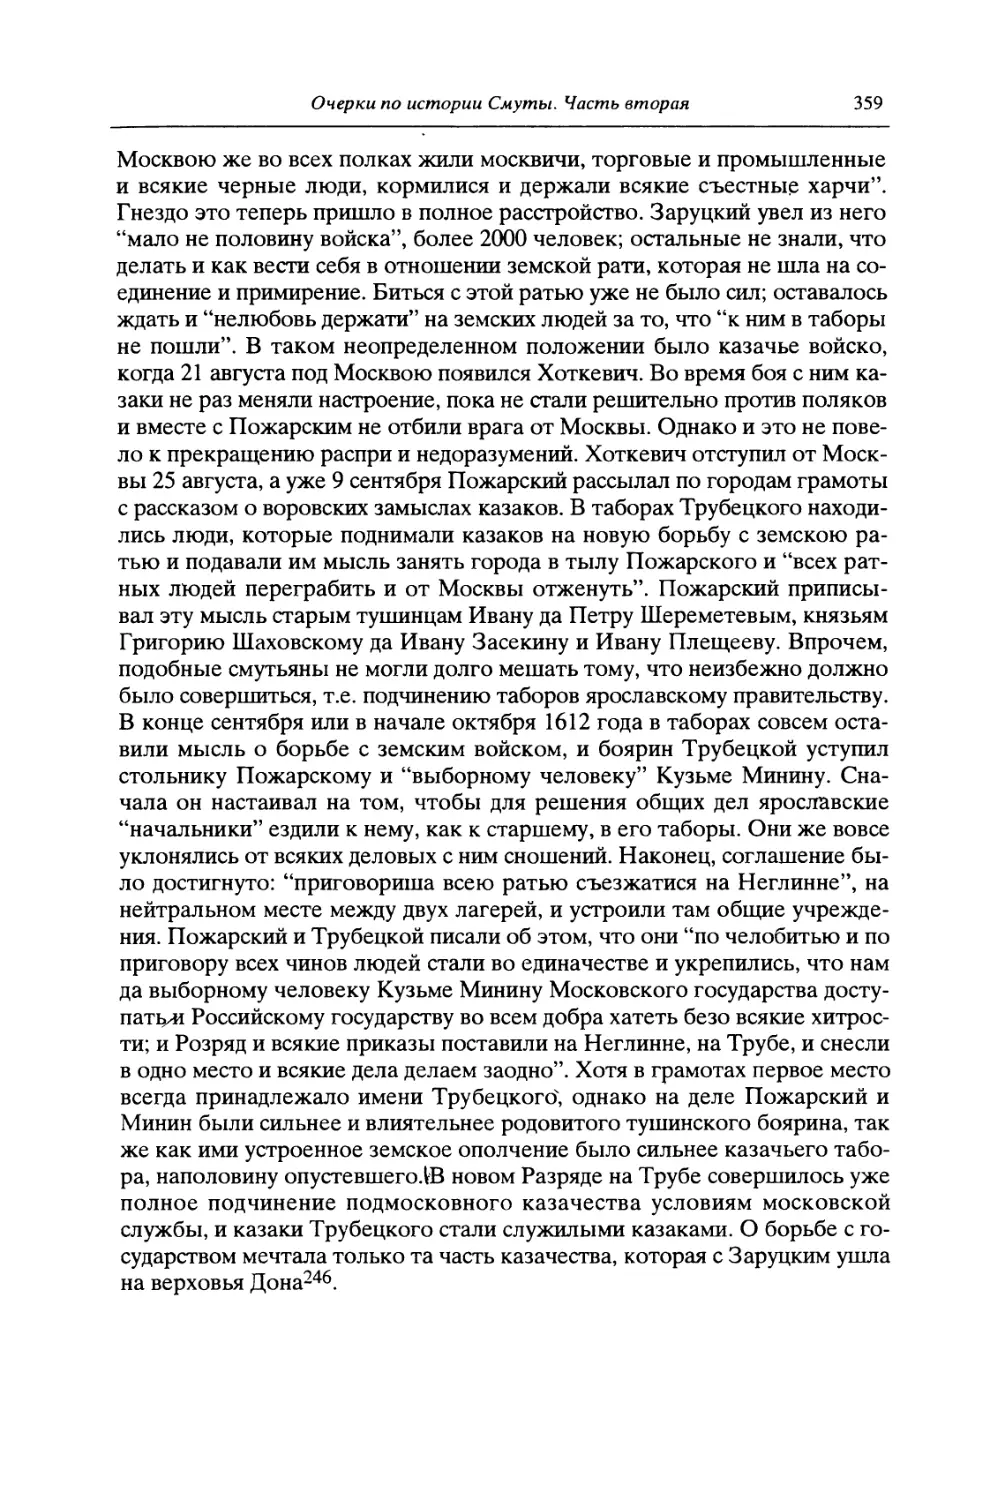 VIII. Освобождение Москвы и земский собор 1613 года для избрания царя